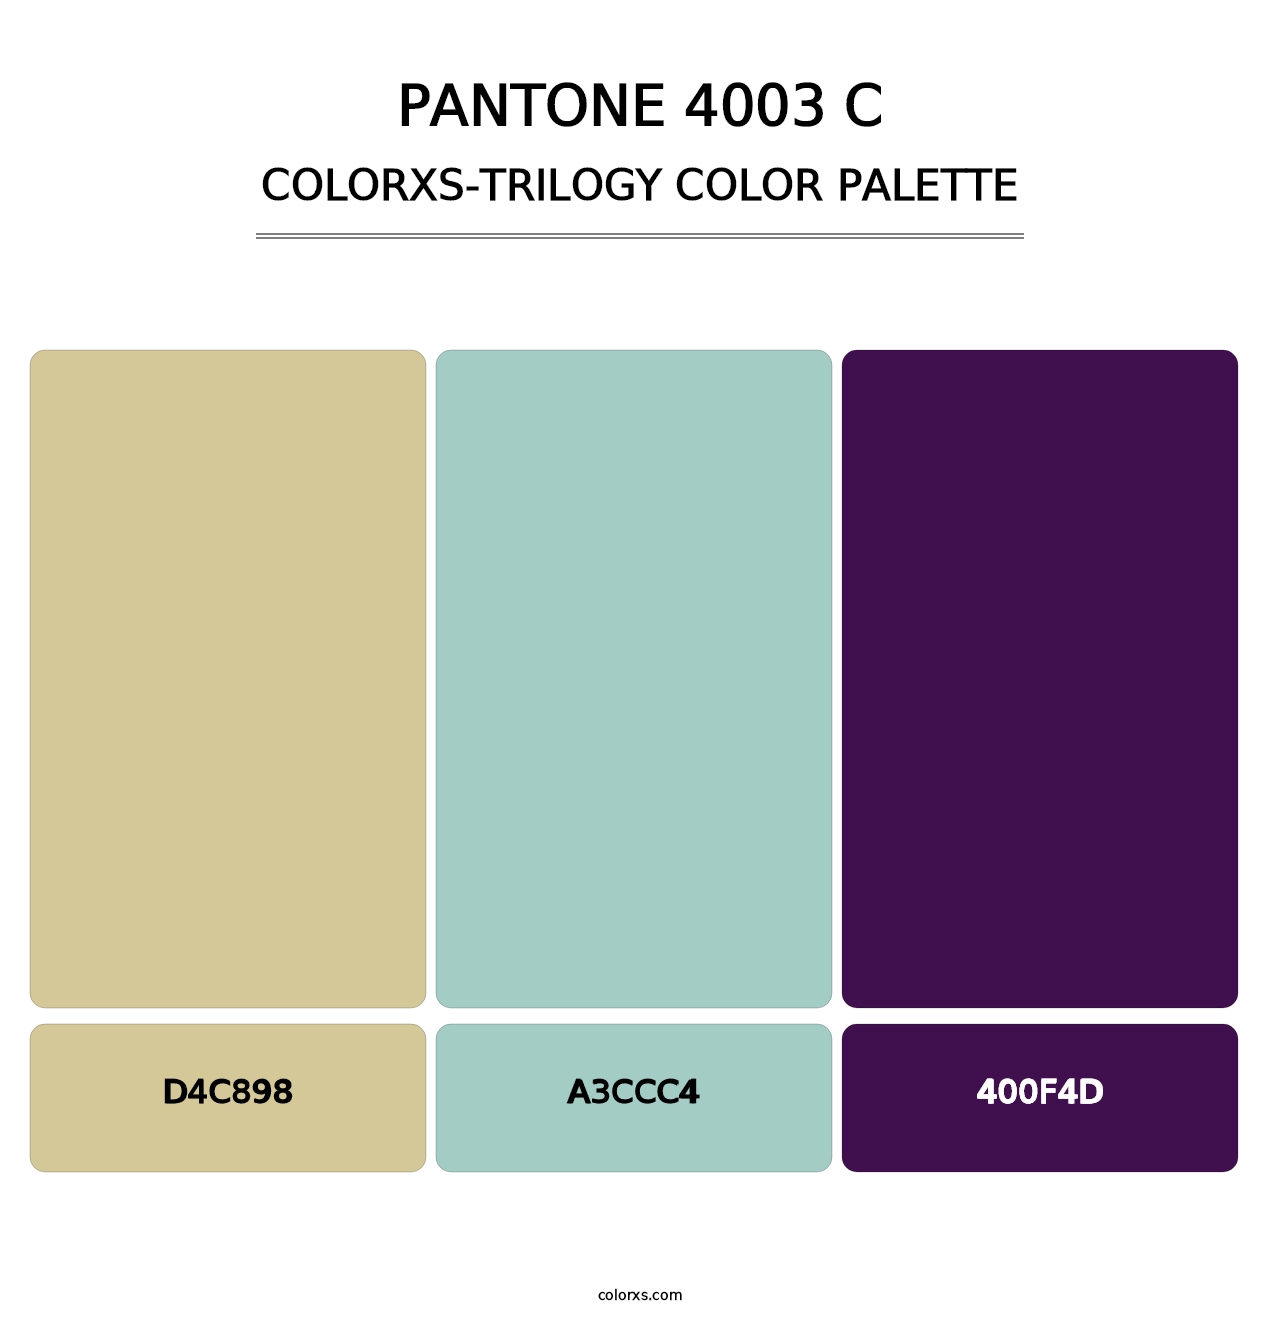 PANTONE 4003 C - Colorxs Trilogy Palette